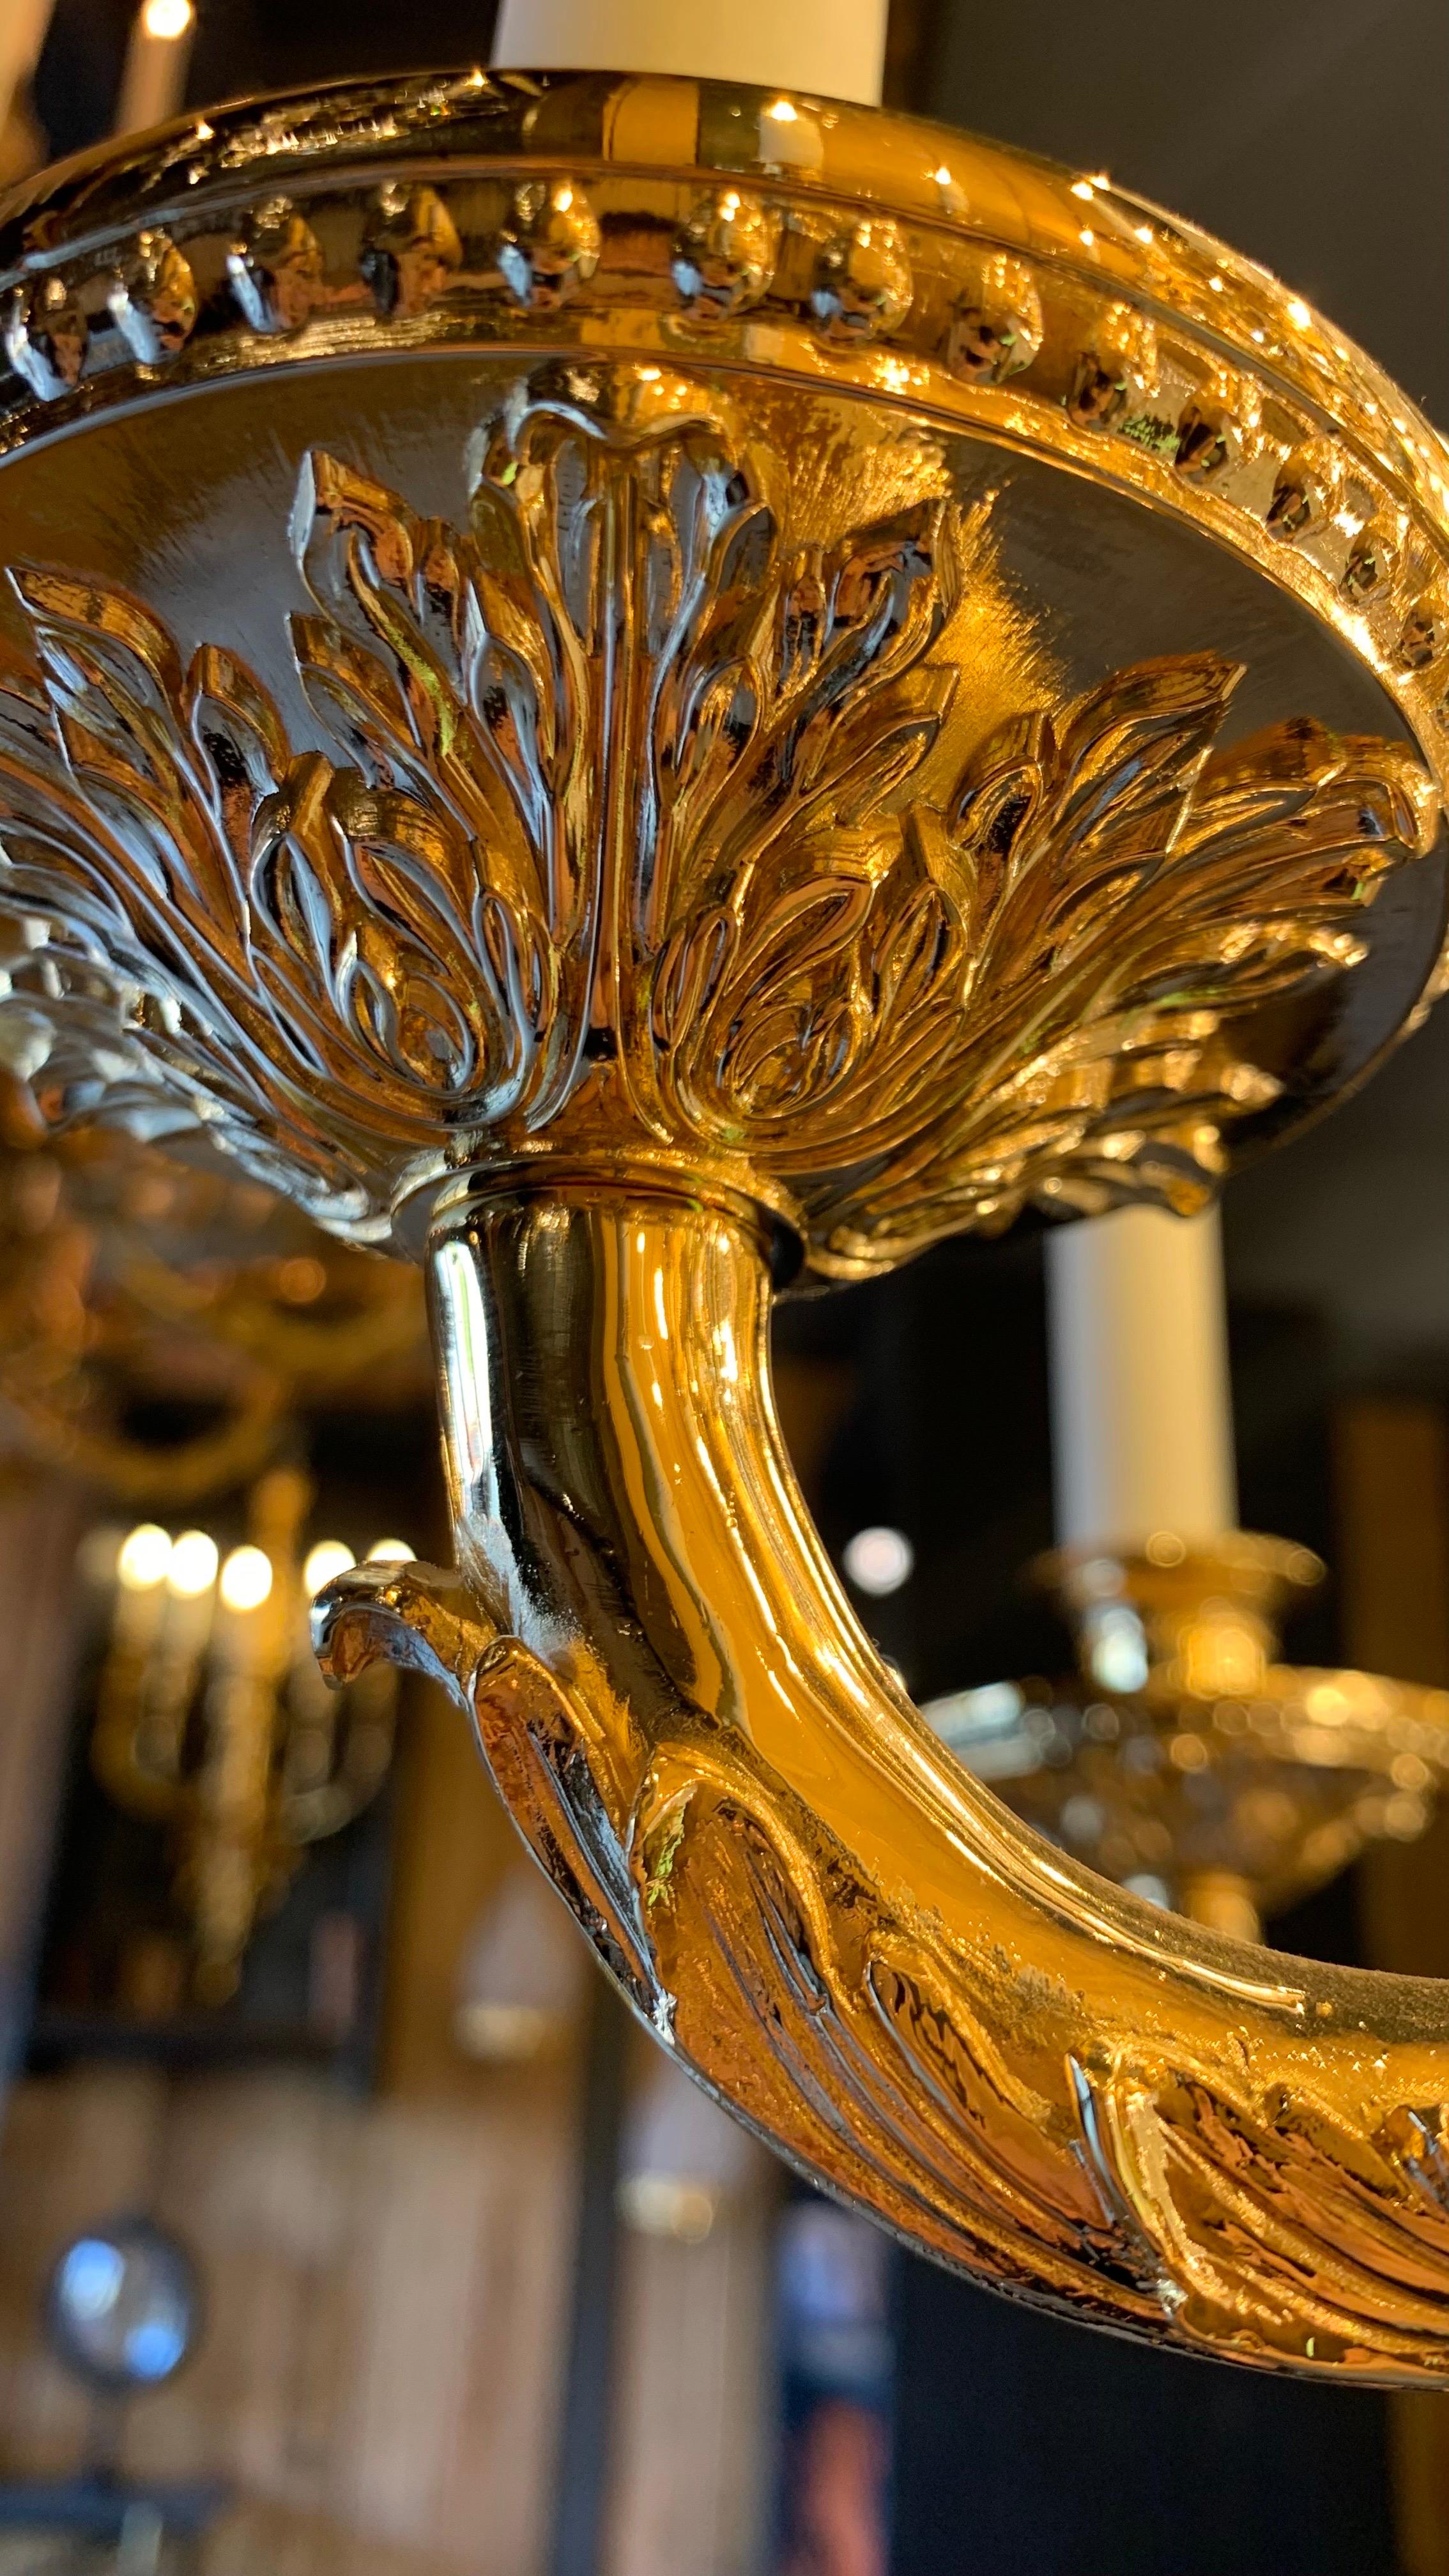 Magnifique lustre en forme de panier de style Napoléon III à 36 lumières en bronze doré 24K, de nombreuses gouttes de cristal lui donnent un effet somptueux.
Nous avons un lustre en stock mais nous pouvons les produire sur mesure et dans d'autres